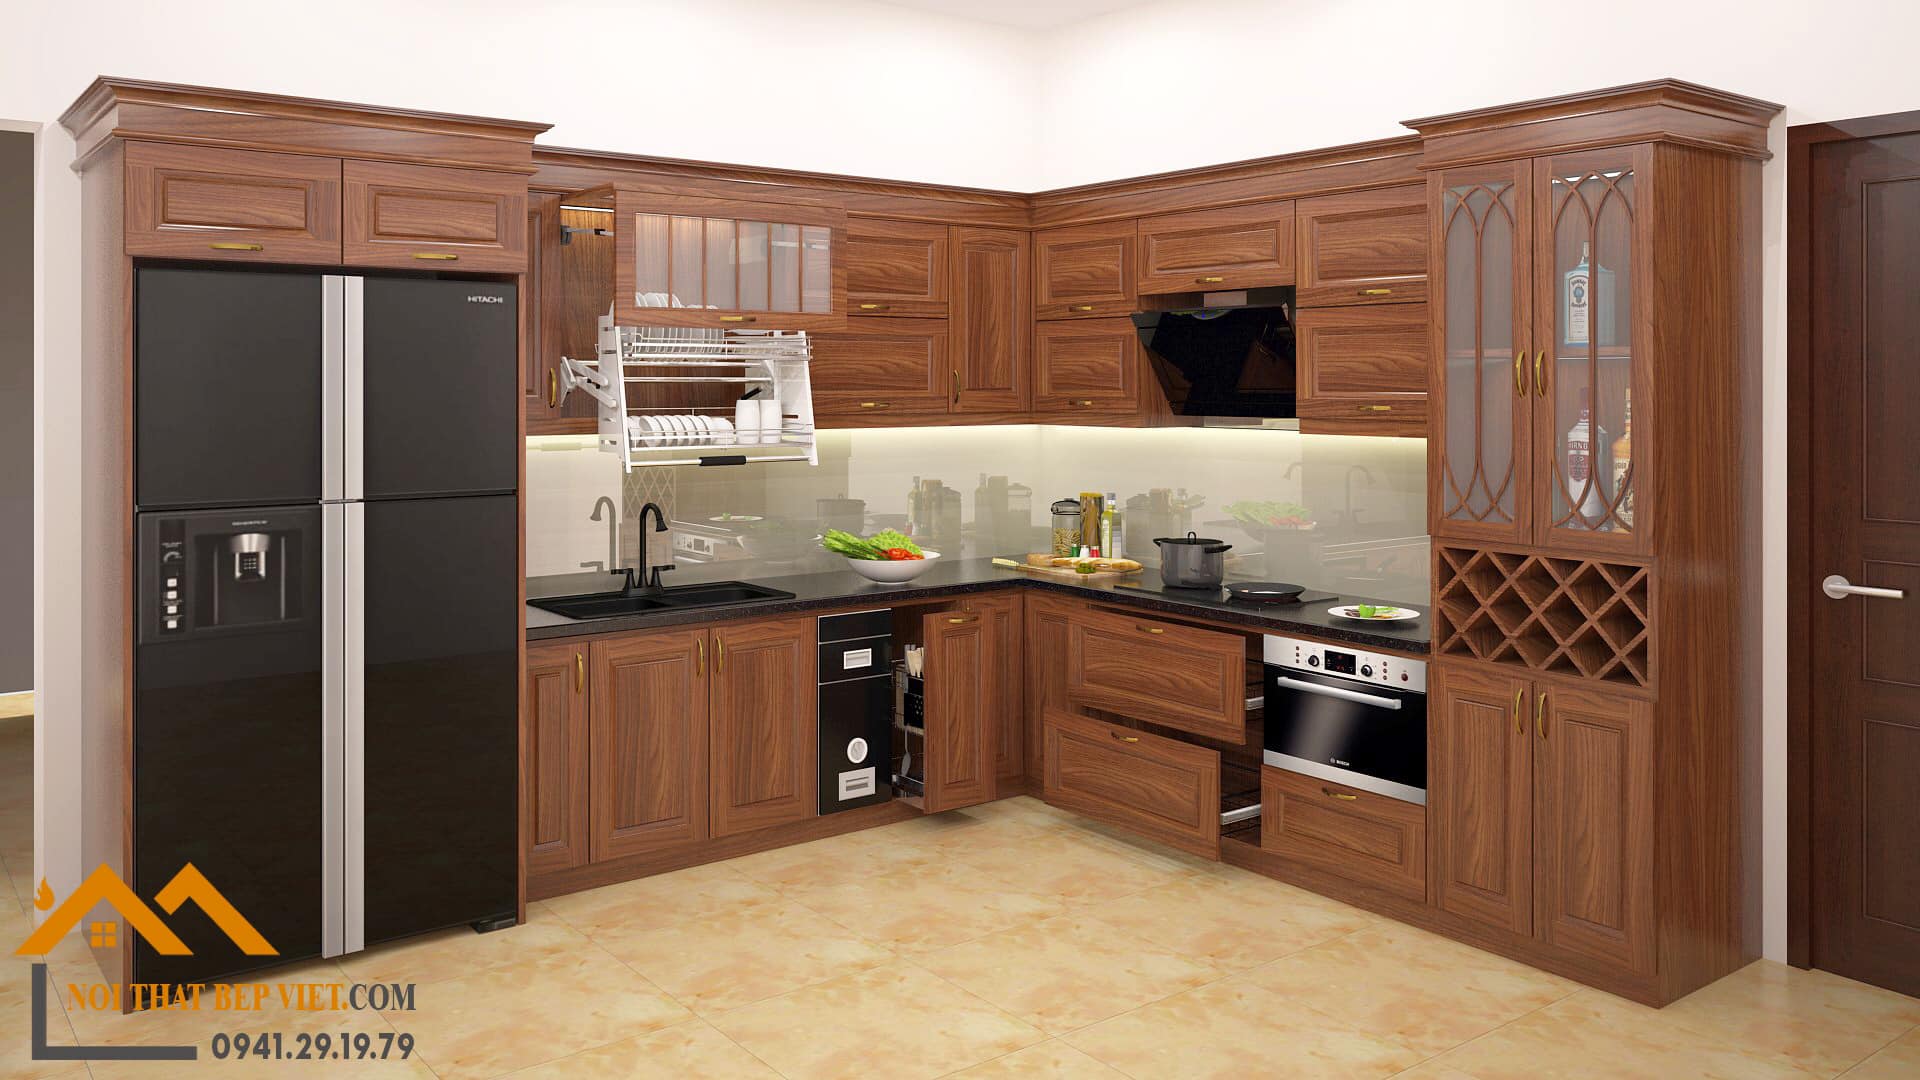 Với sự kết hợp tinh tế giữa gỗ Lim tự nhiên và công nghệ hiện đại, tủ bếp này sẽ khiến không gian nhà bếp của bạn trở nên sang trọng và đẳng cấp hơn bao giờ hết. Hãy để M7 Hotline giúp bạn hoàn thiện ước mơ sở hữu tủ bếp gỗ Lim đẹp nhất cho ngôi nhà của mình.